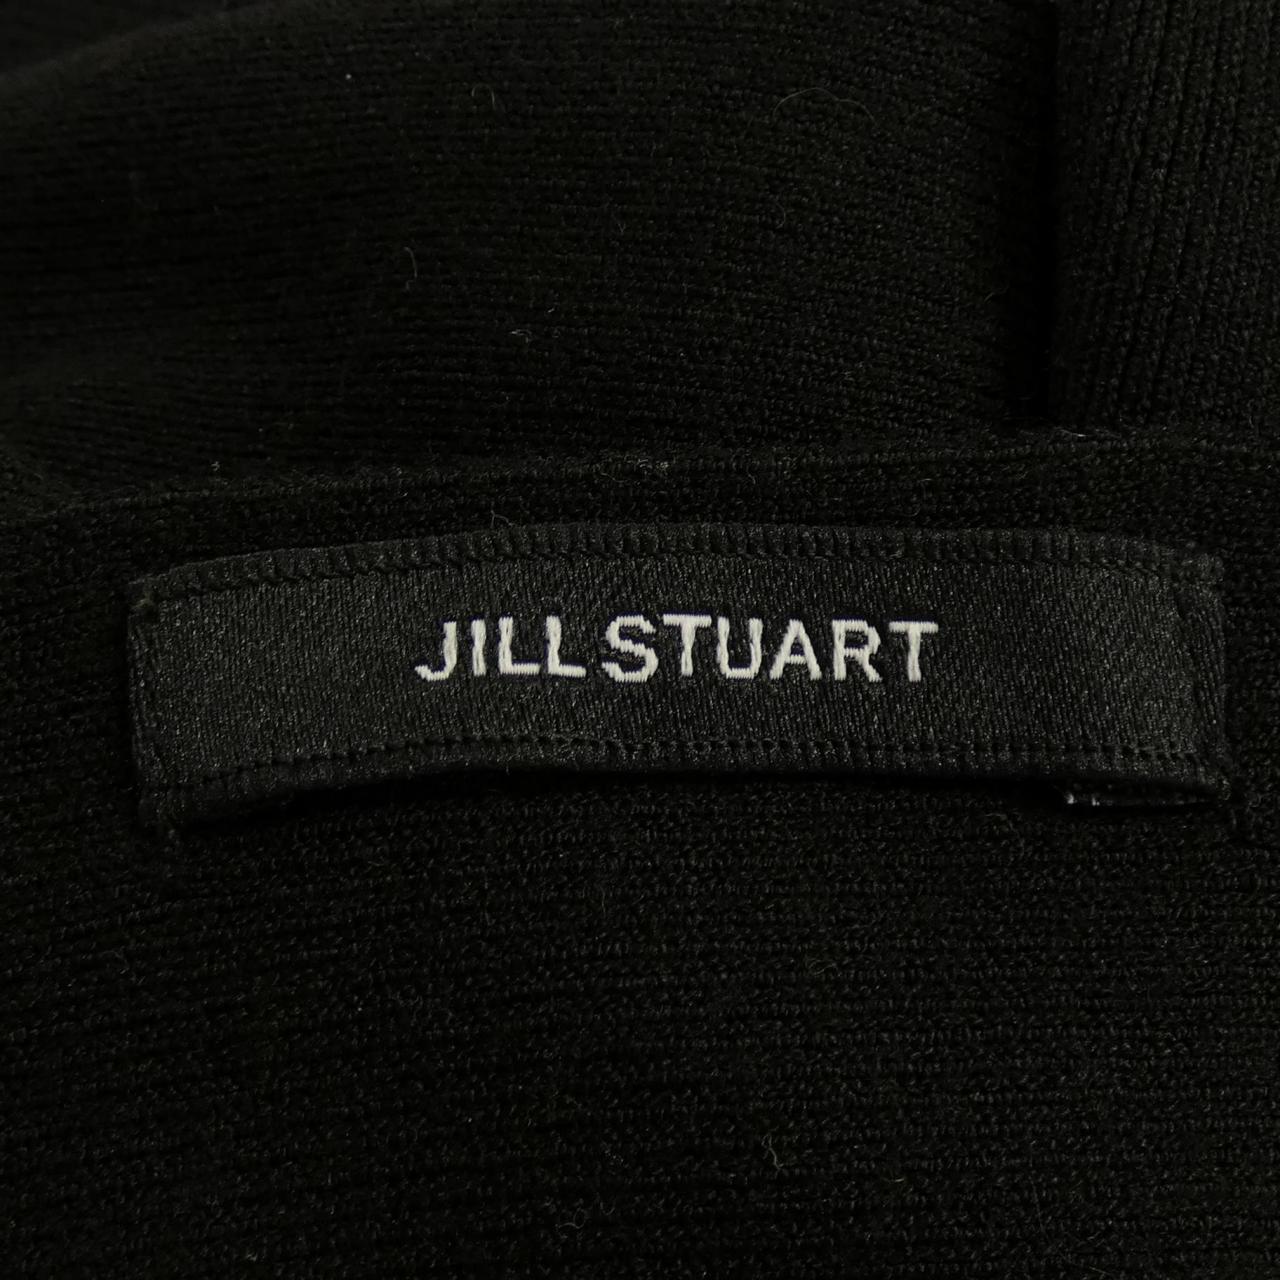 JILL STUART ·斯圖爾特合奏團